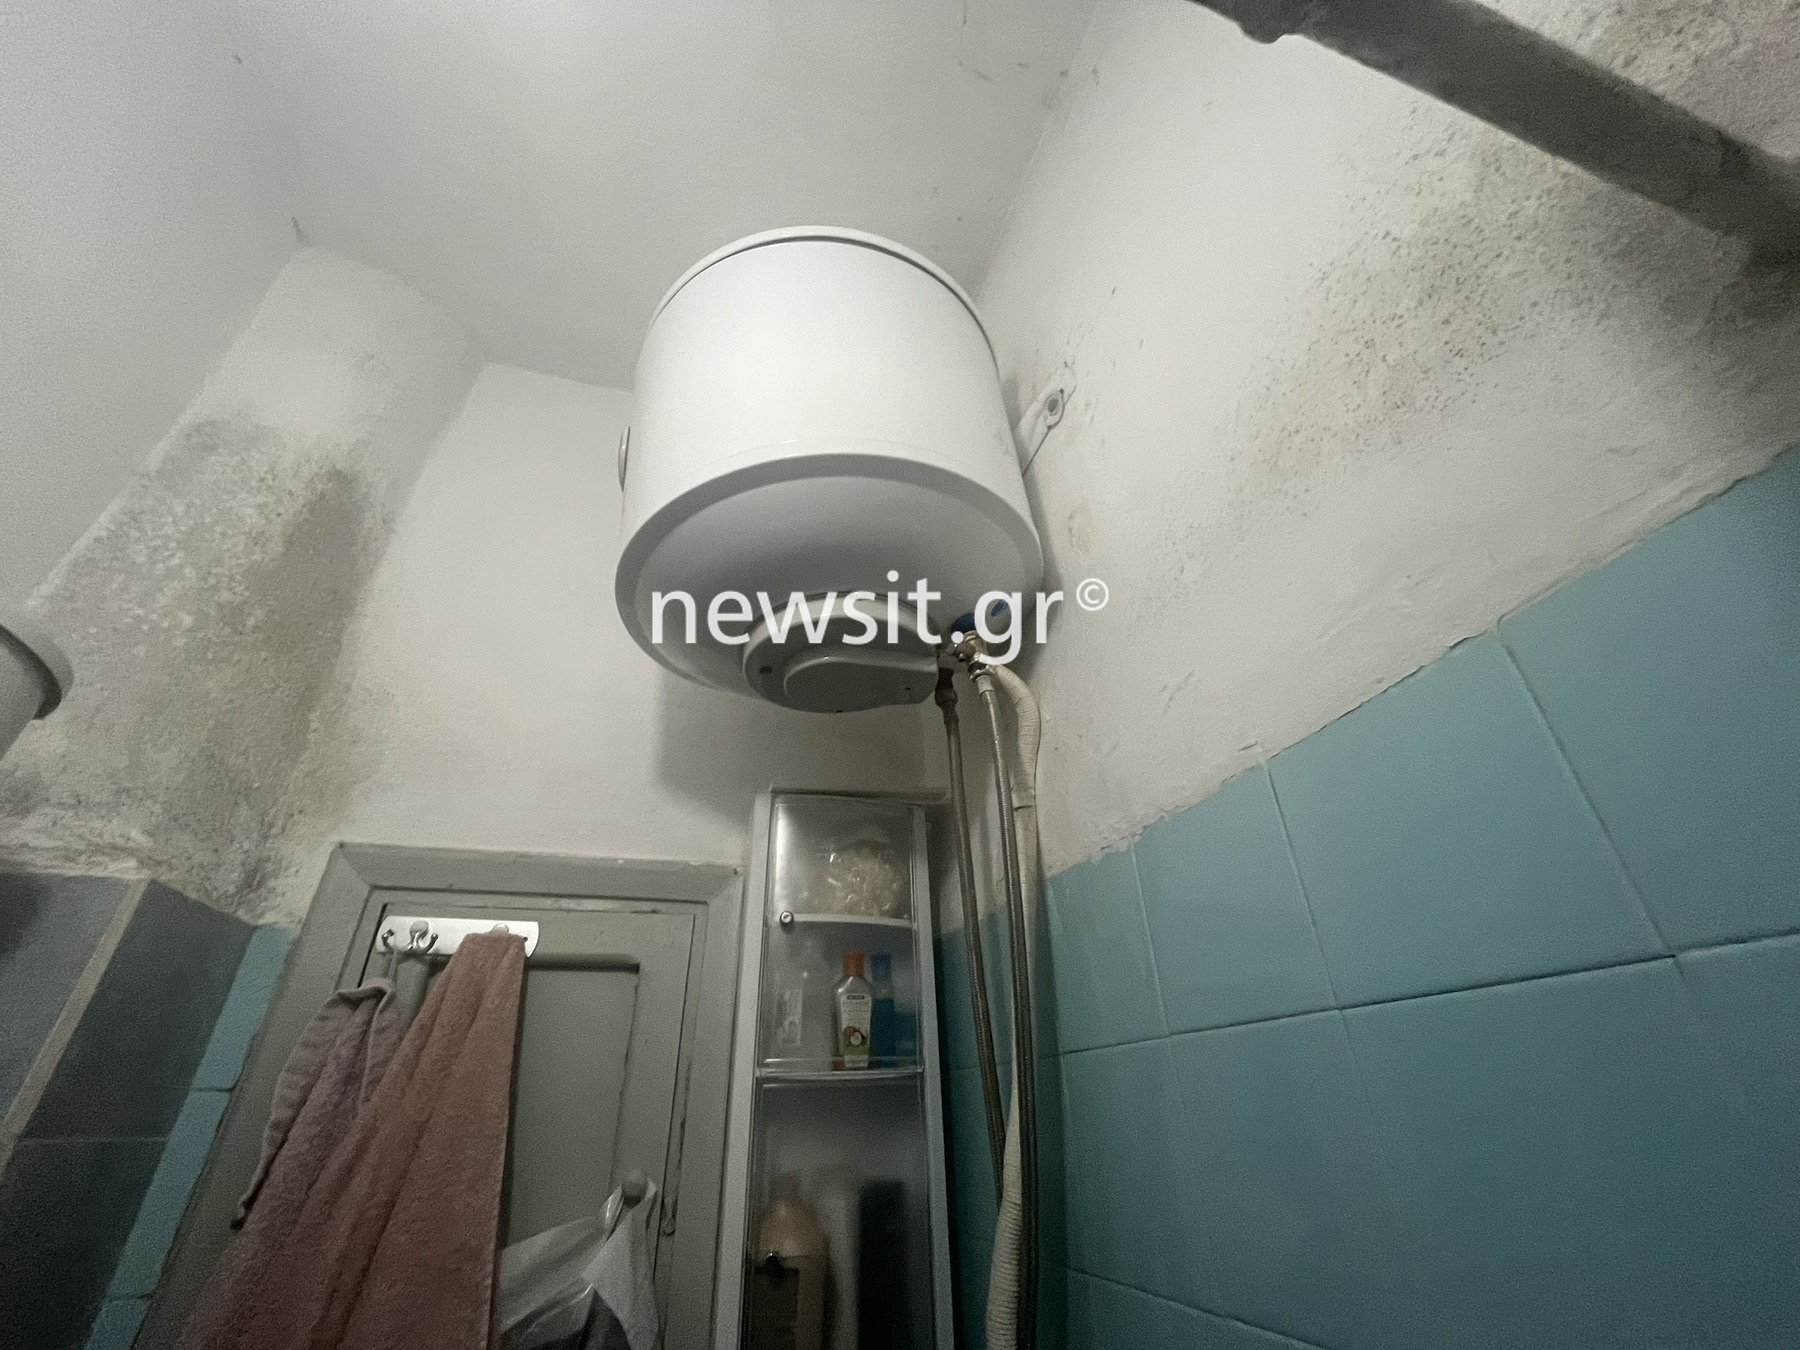 Θεσσαλονίκη: Φωτογραφίες ντοκουμέντα από το μπάνιο όπου πέθανε από ηλεκτροπληξία η 24χρονη